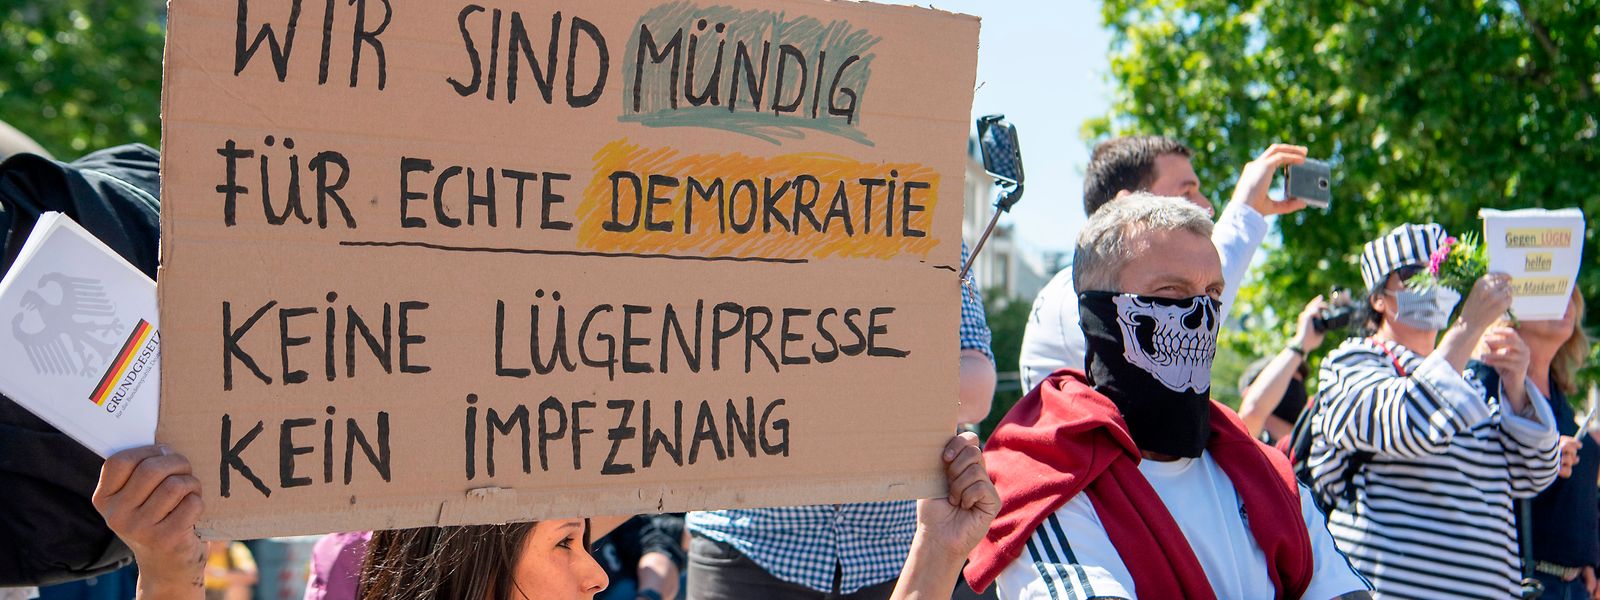 Gegen die "Lügenpresse" und einen "Impfzwang" richtet sich die Aufschrift auf dem Plakat einer Frau, die sich vor der Alten Oper in Frankfurt an einer Kundgebung gegen die Corona-Maßnahmen der Regierung richtete.